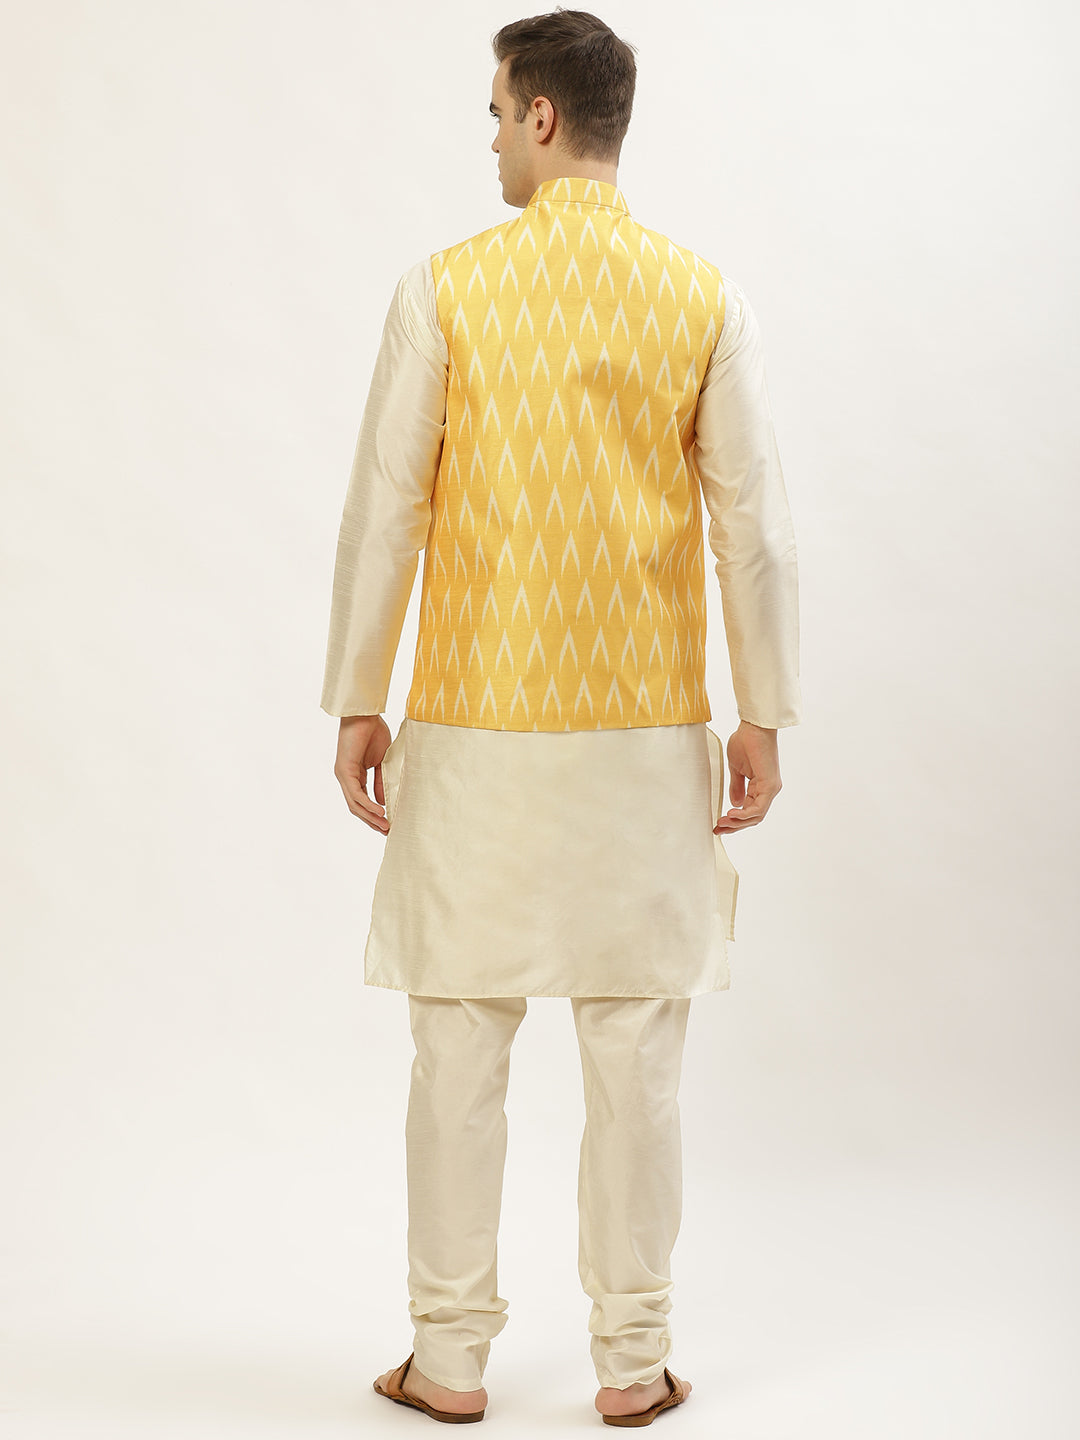 Jompers Men's Ikat Print Nehru Jacket & Kurta Pyjama